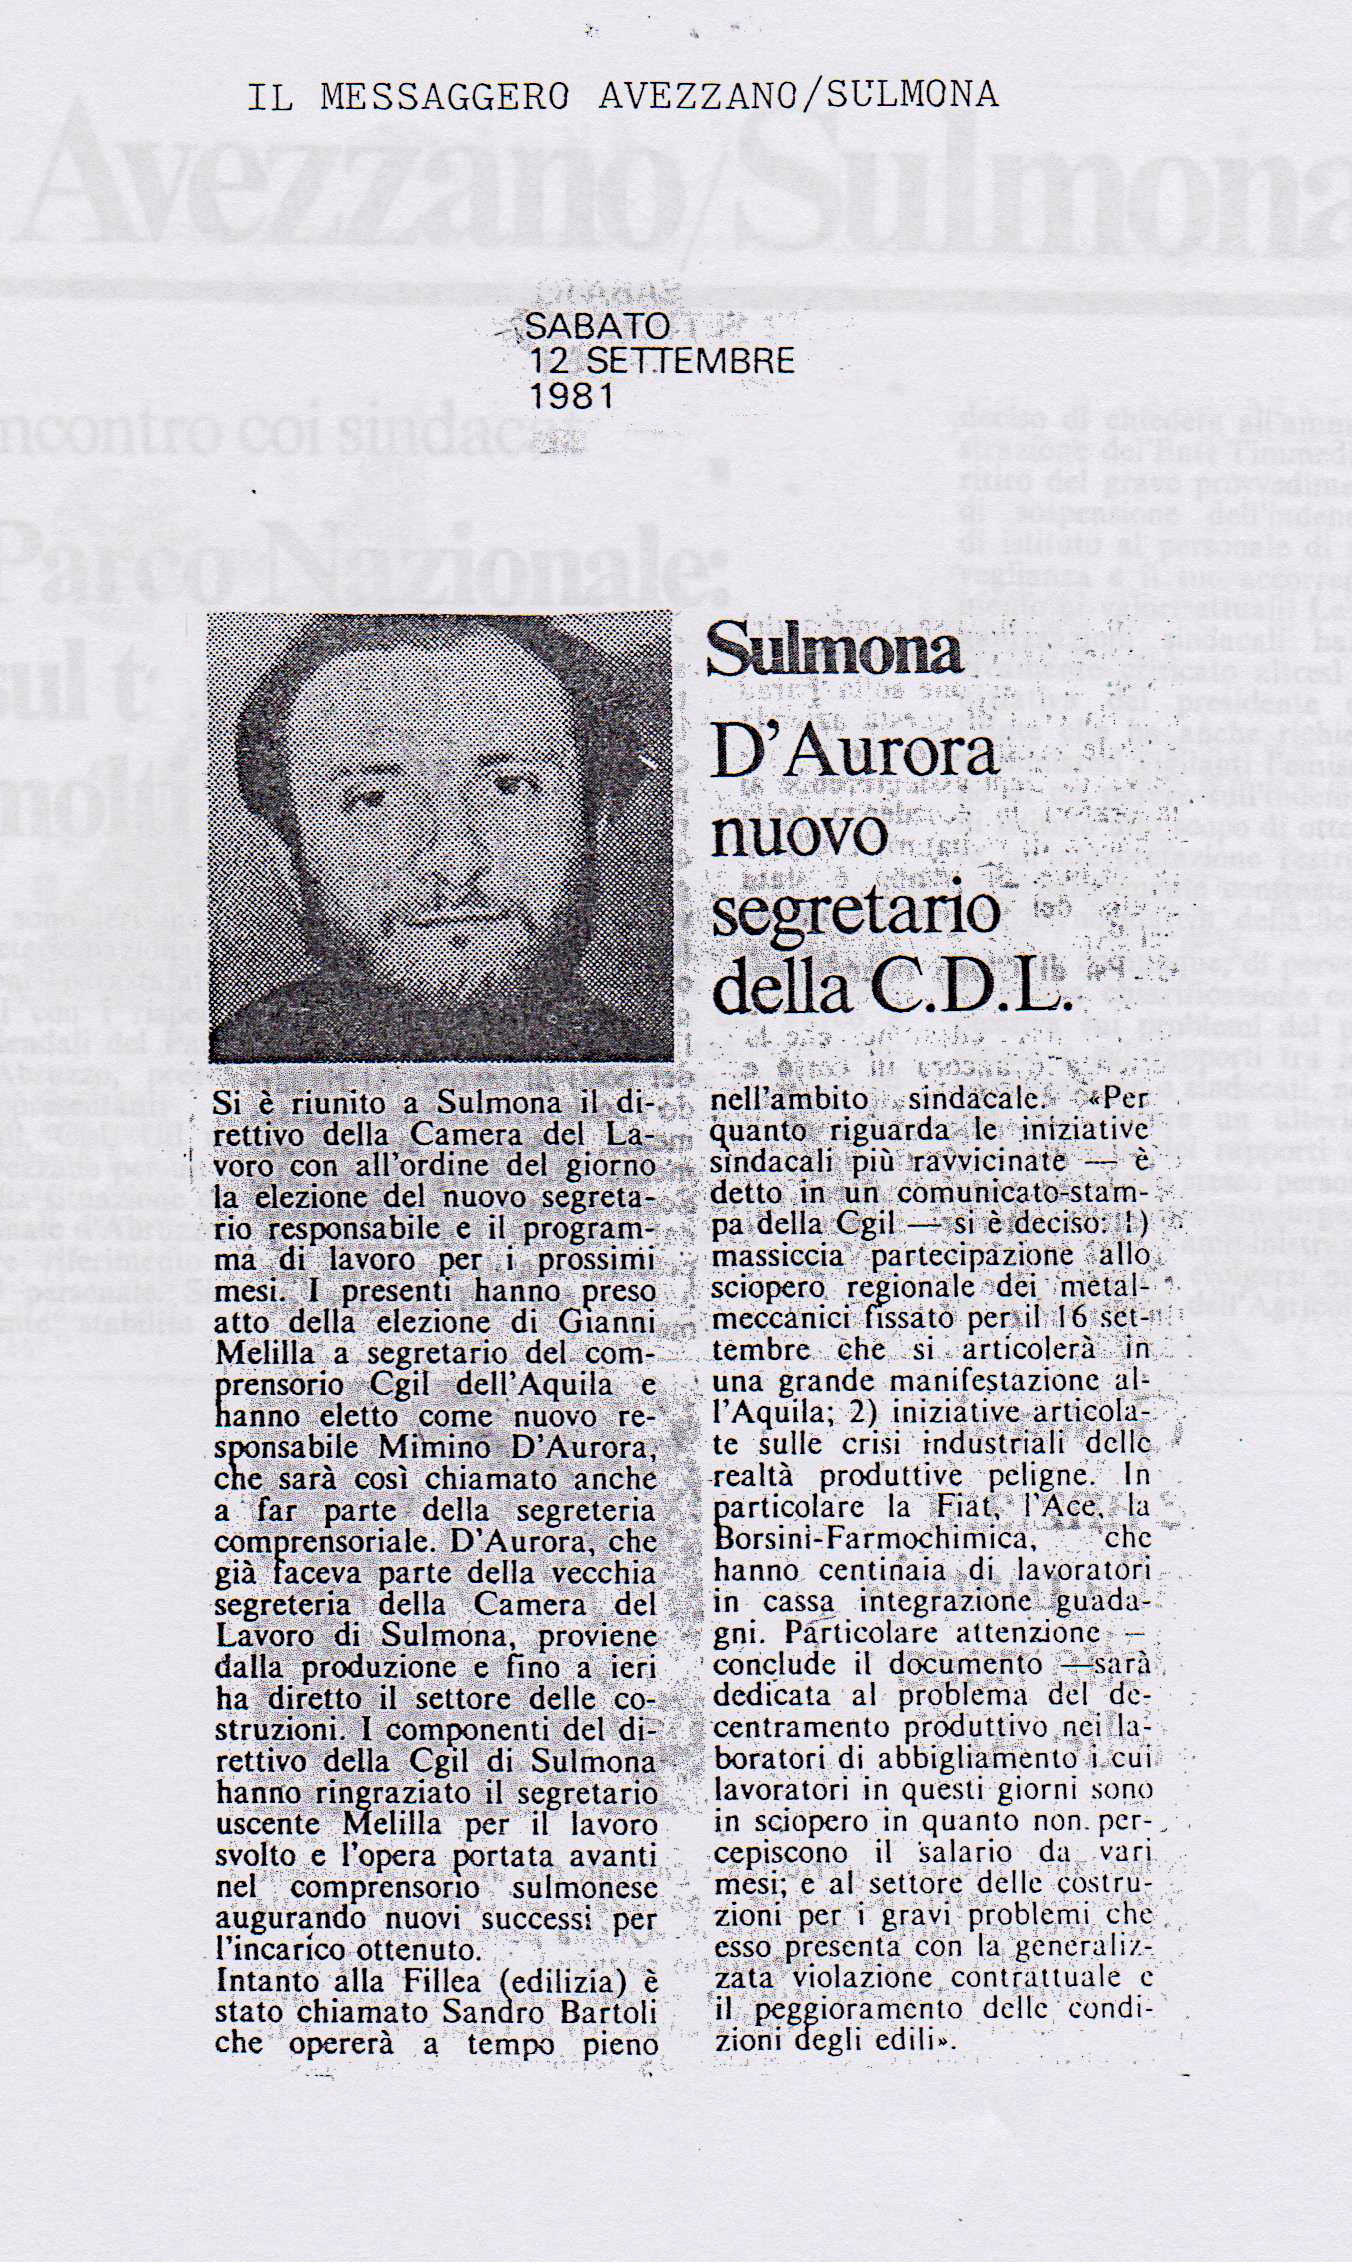 1981.09.12. Messaggero. D'Aurora segretario CdL Sulmona